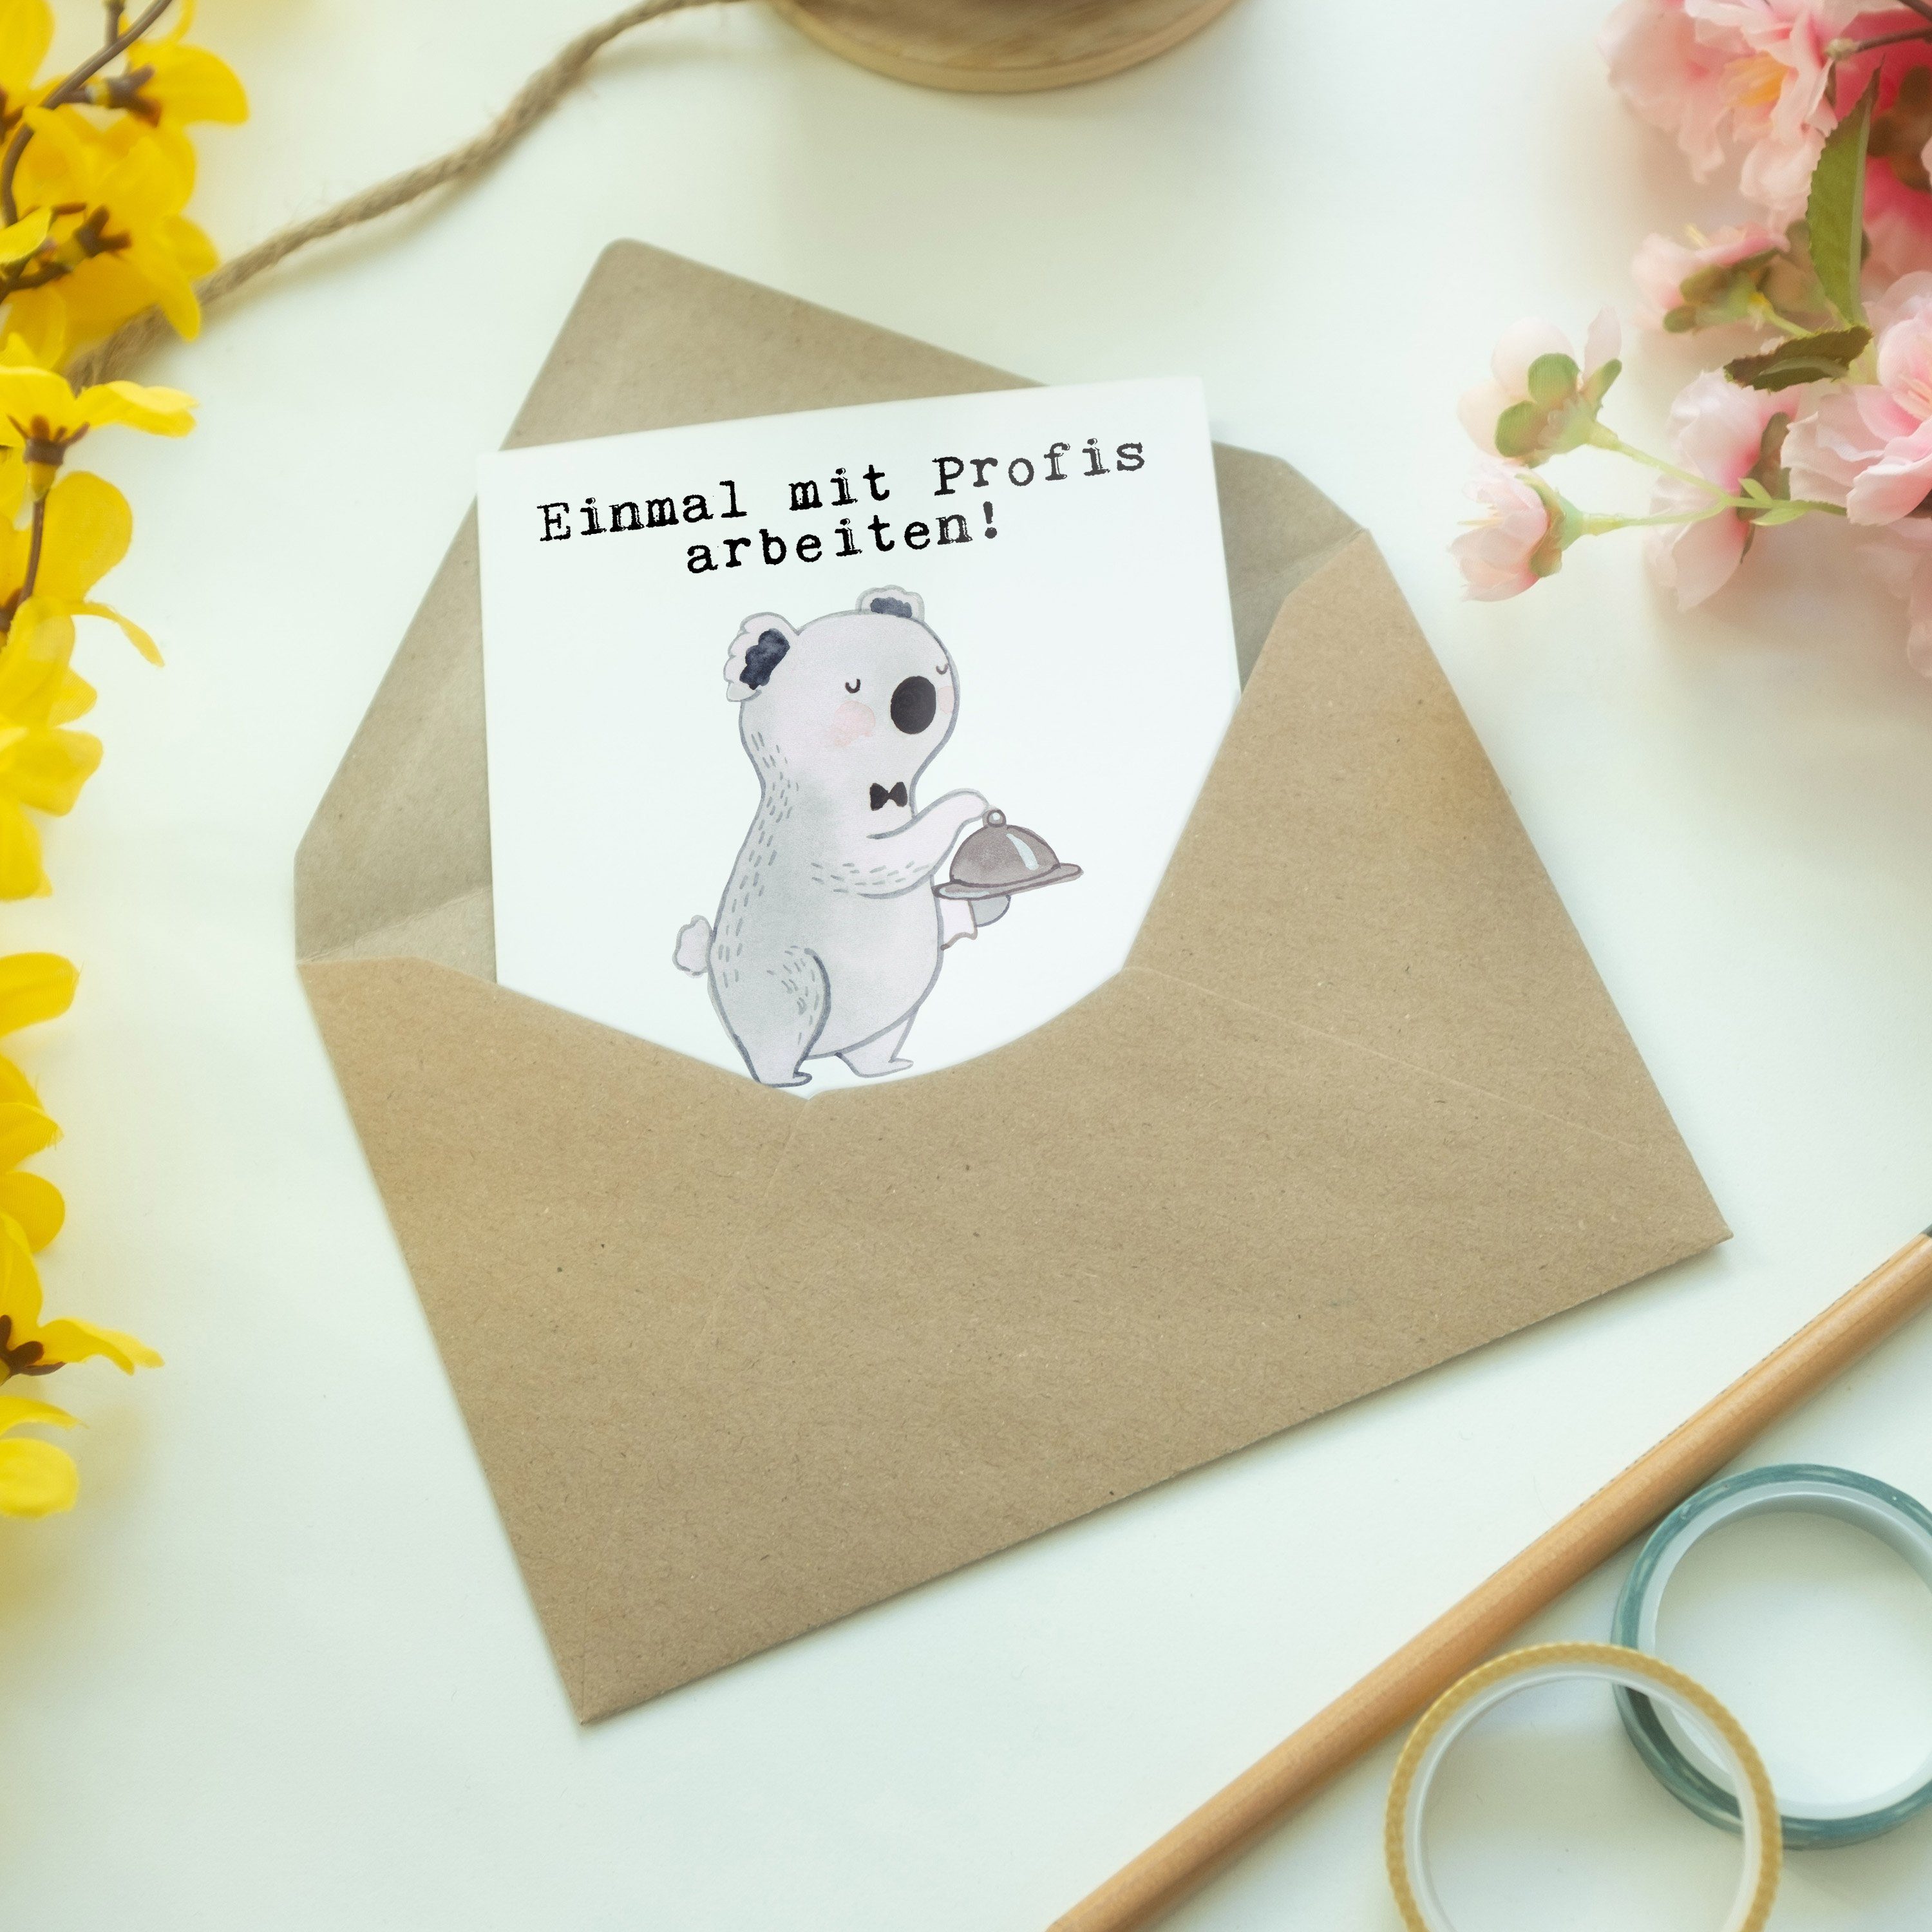 Mr. Mrs. - Weiß Hochzeitskarte & Geschenk, Leidenschaft - Restaurantfachmann aus Grußkarte Panda